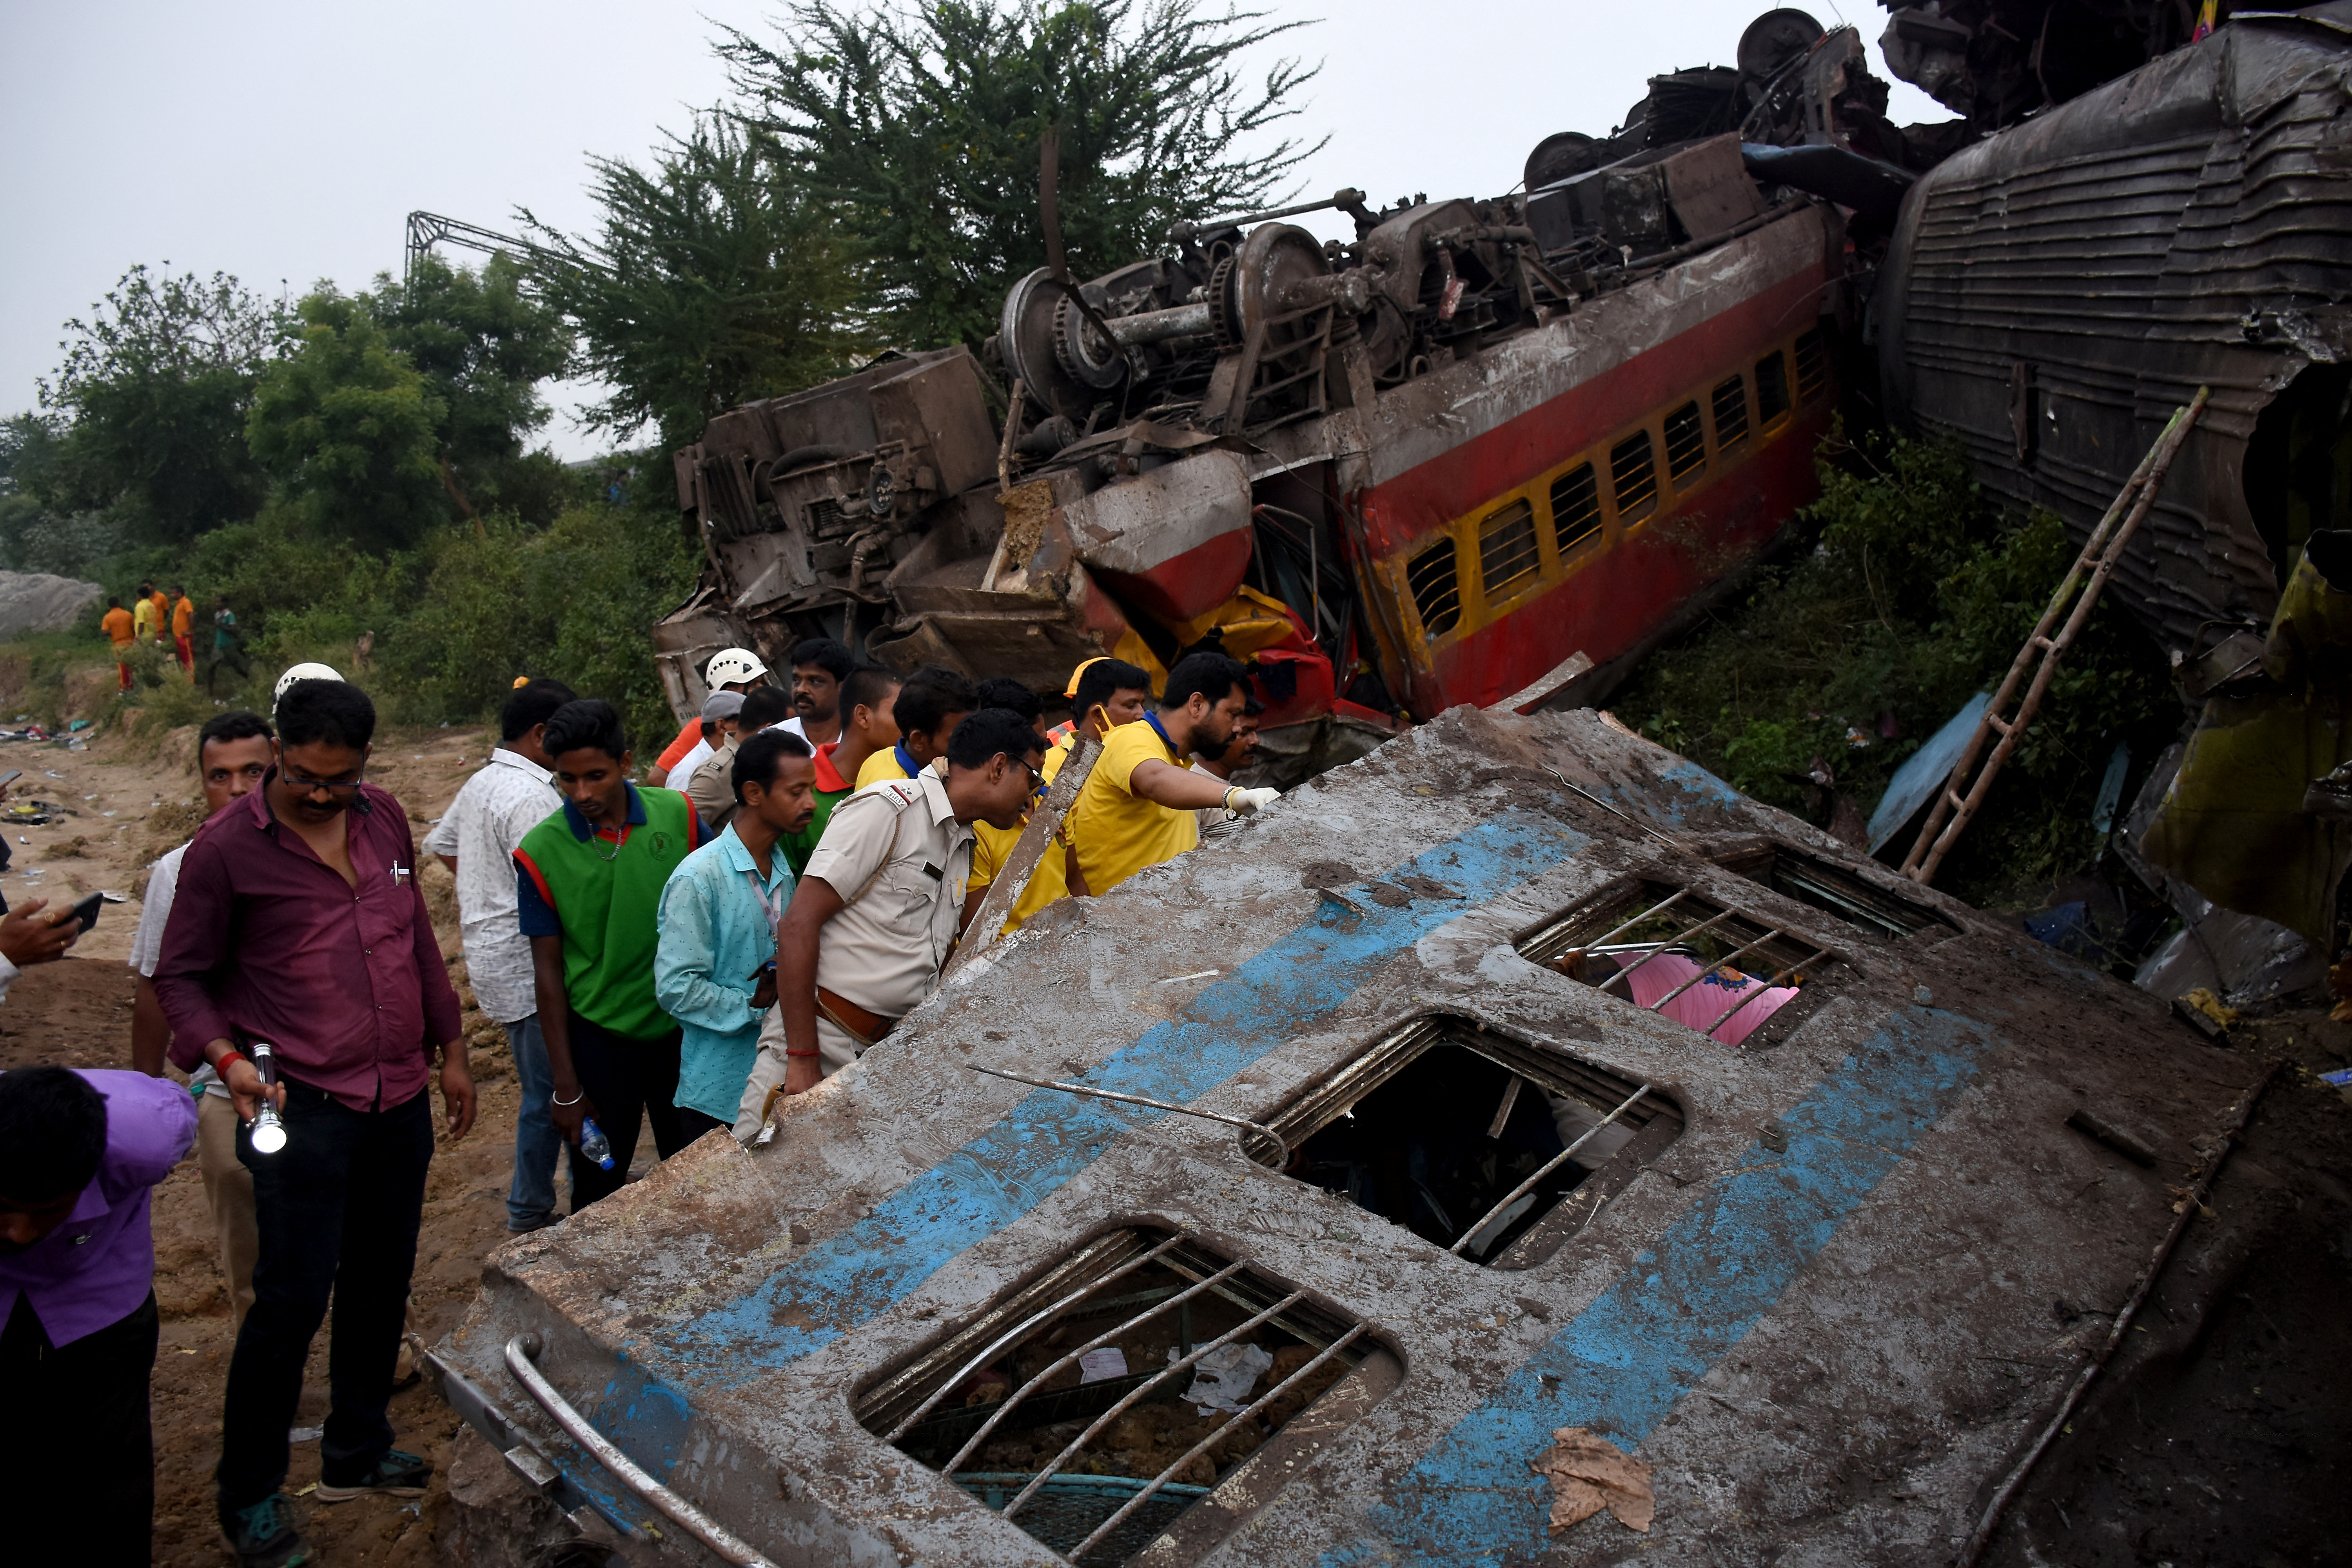 Las autoridades indias anunciaron una serie de indemnizaciones de hasta 200.000 rupias (más de 2.250 euros) para los familiares de las víctimas, y hasta 50.000 rupias (más de 560 euros) para los heridos. (REUTERS)